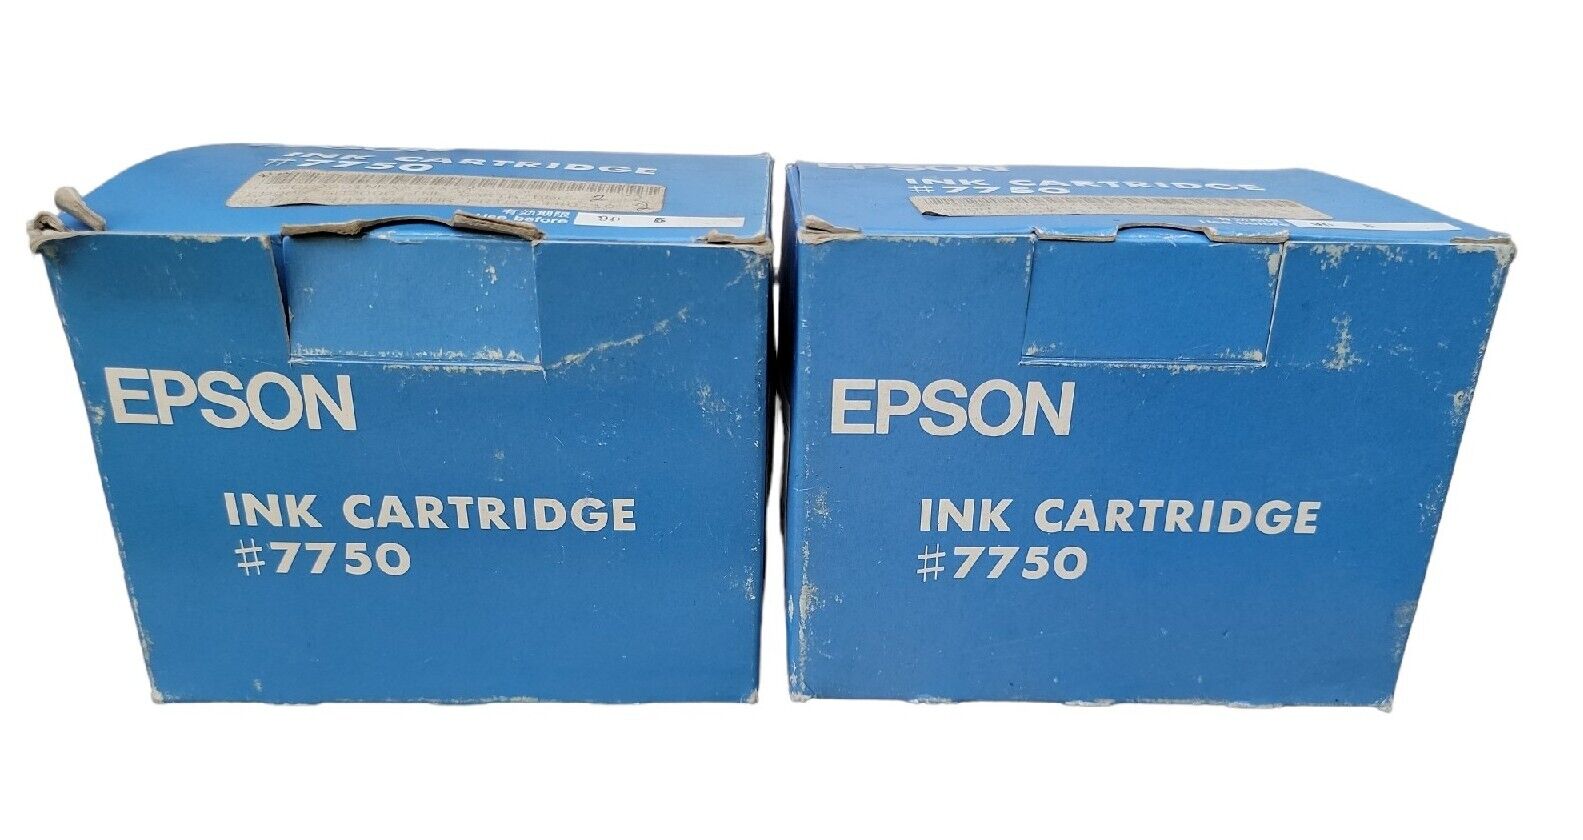 Vtg 80s Genuine Epson Ink Cartridge 7750 for Vtg SQ-2000 Inkjet Printer Lot Of 2